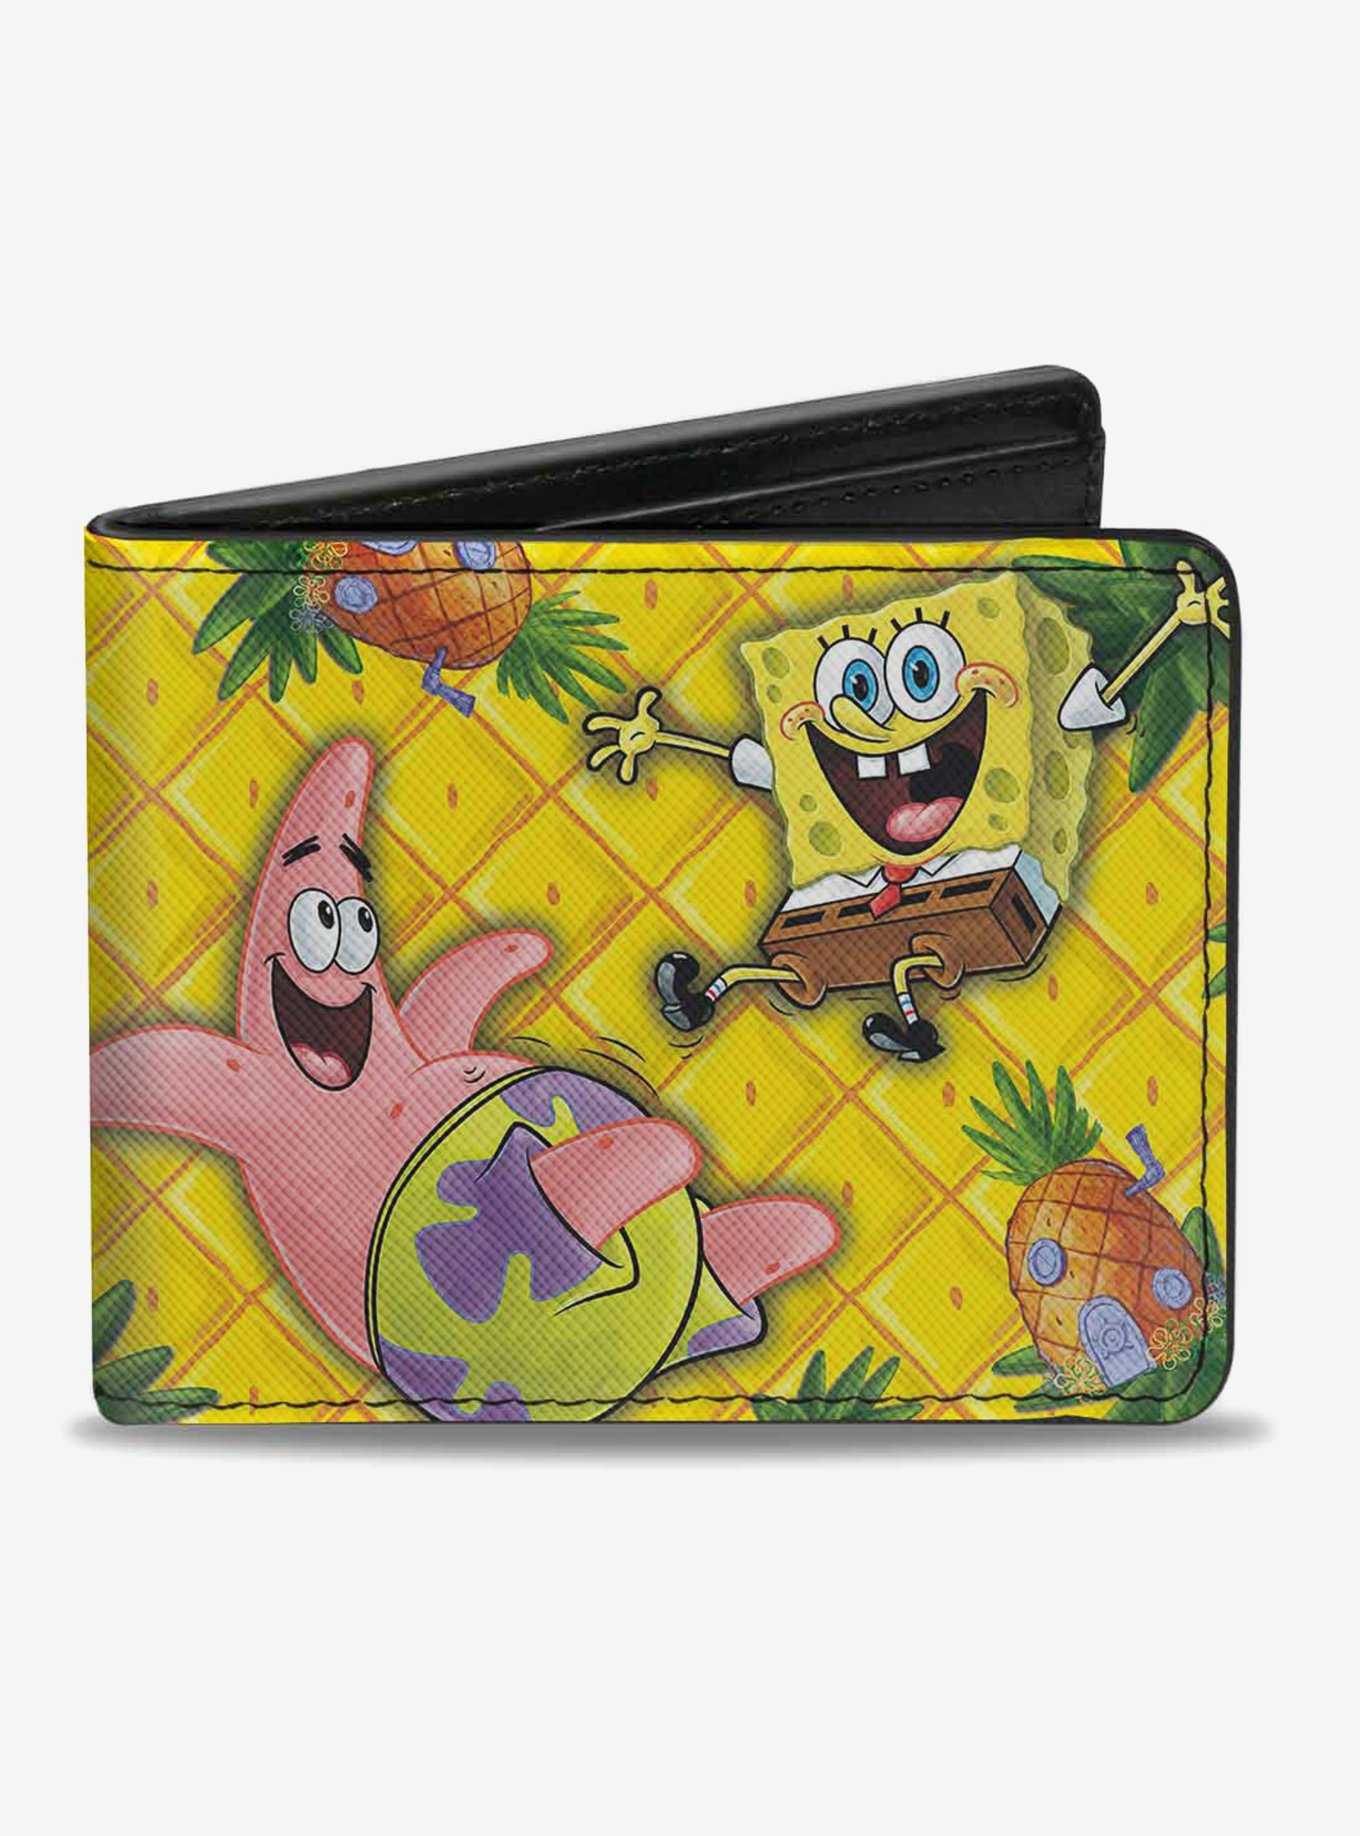 Spongebob Squarepants Patrick Starfish Pose Pineapple Bi-fold Wallet, , hi-res